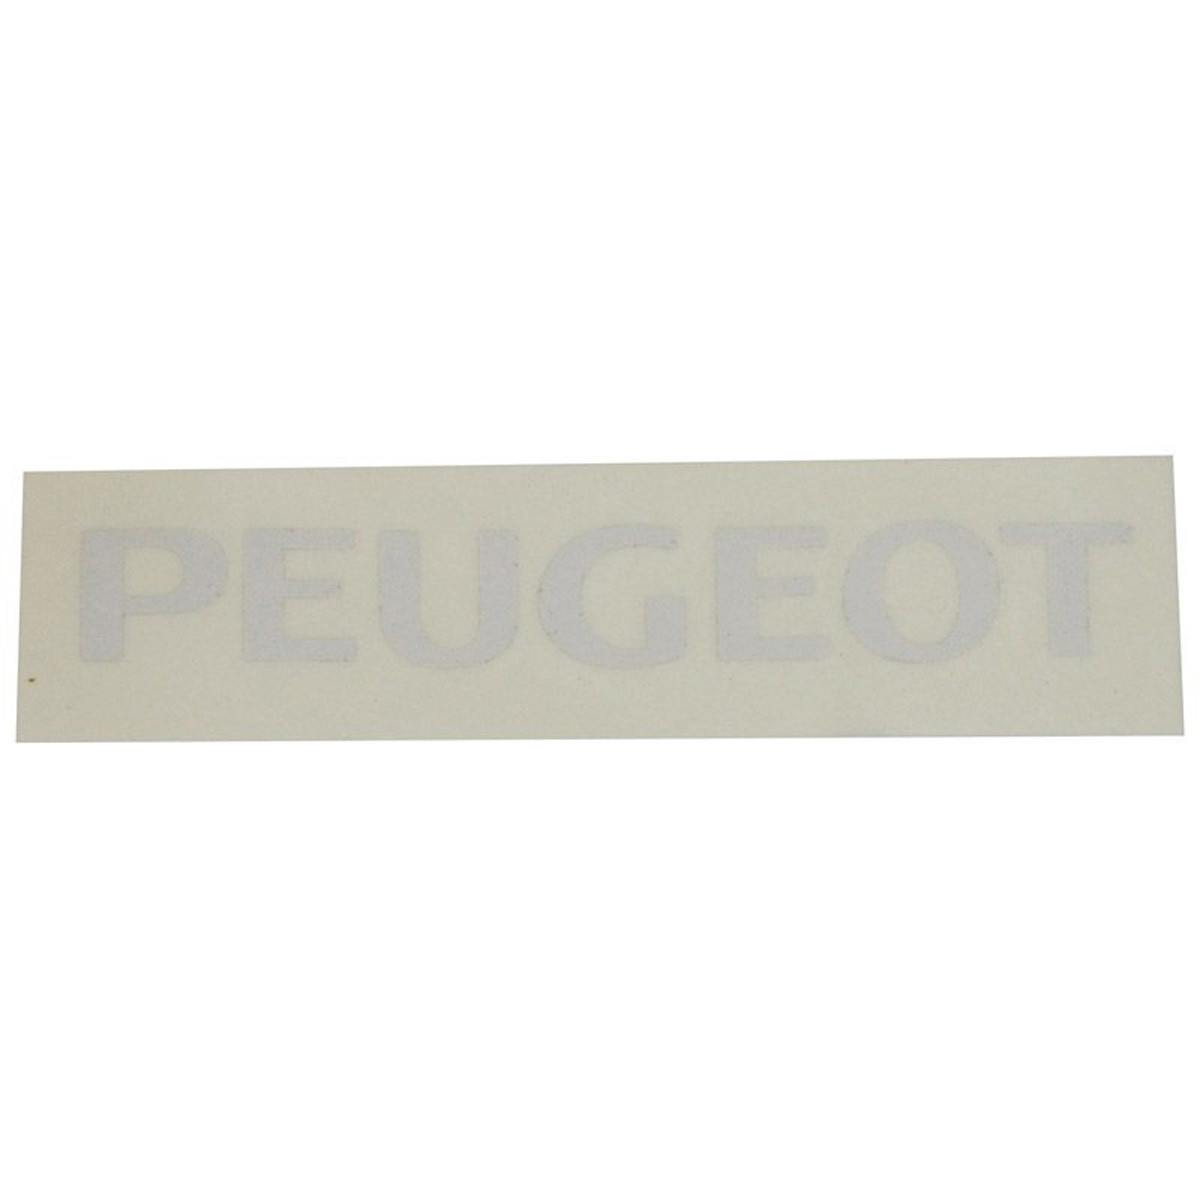 Autocollant / Sticker Carrosserie Peugeot - Blanc /// en Stock sur BIXESS™